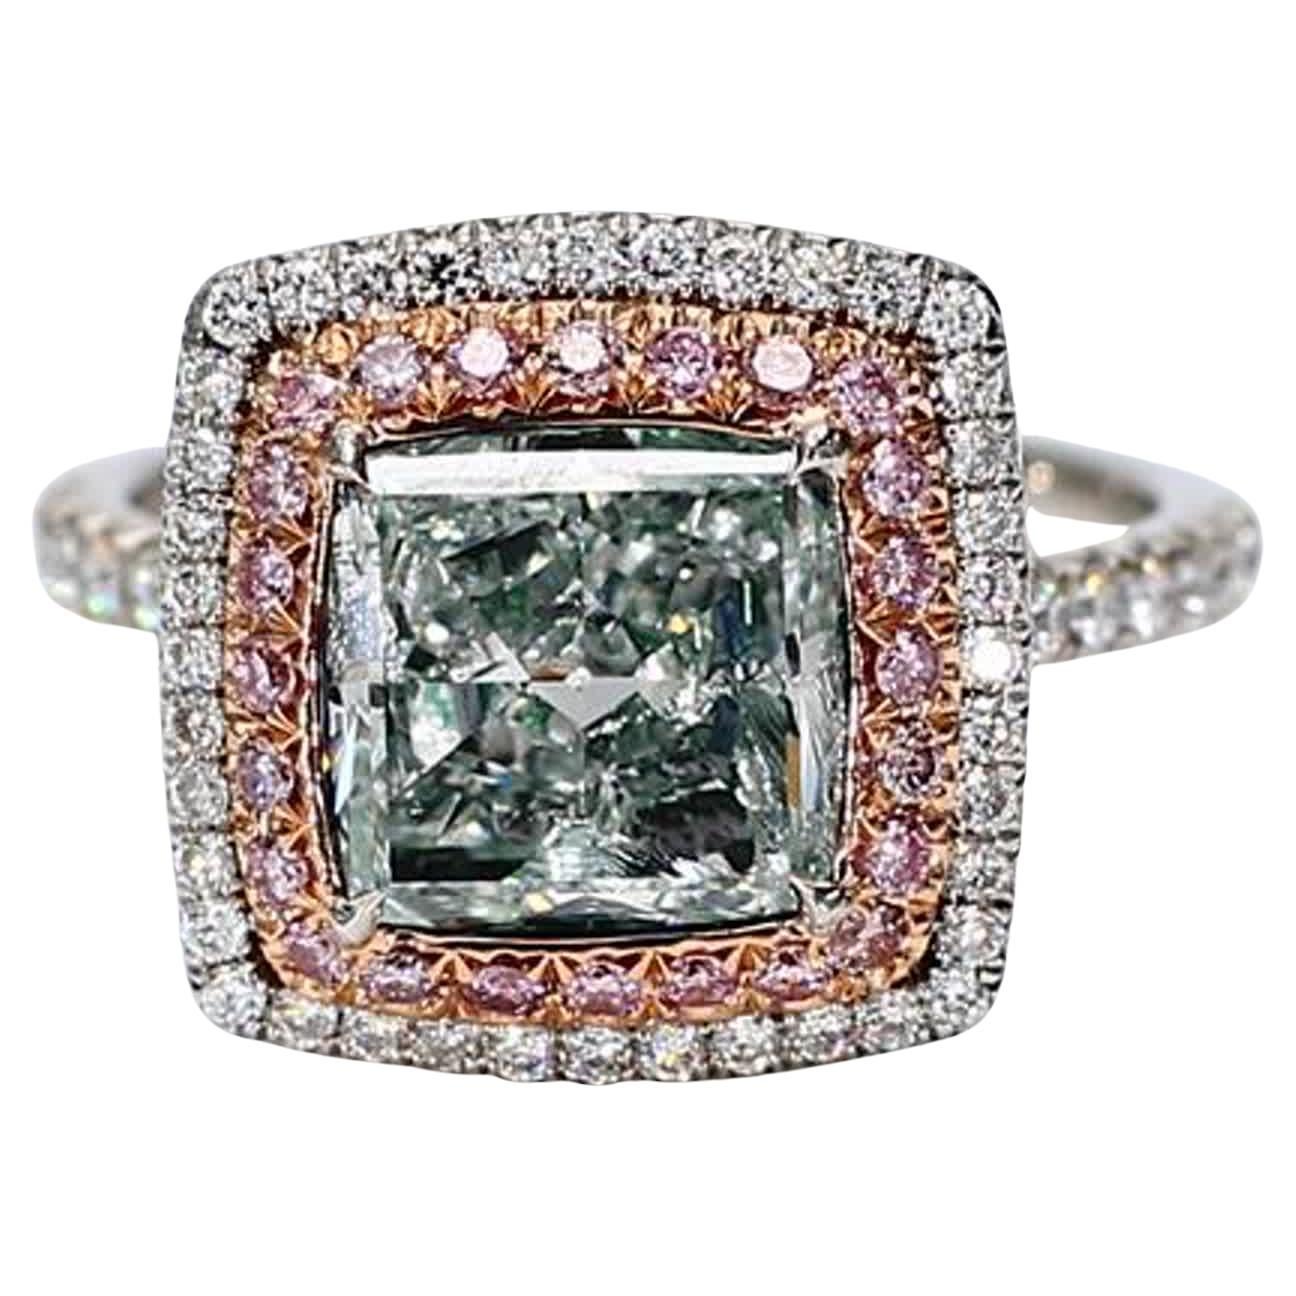 GIA zertifiziert natürlichen grünen Kissen und weißen Diamanten 2,87 Karat TW Gold Ring